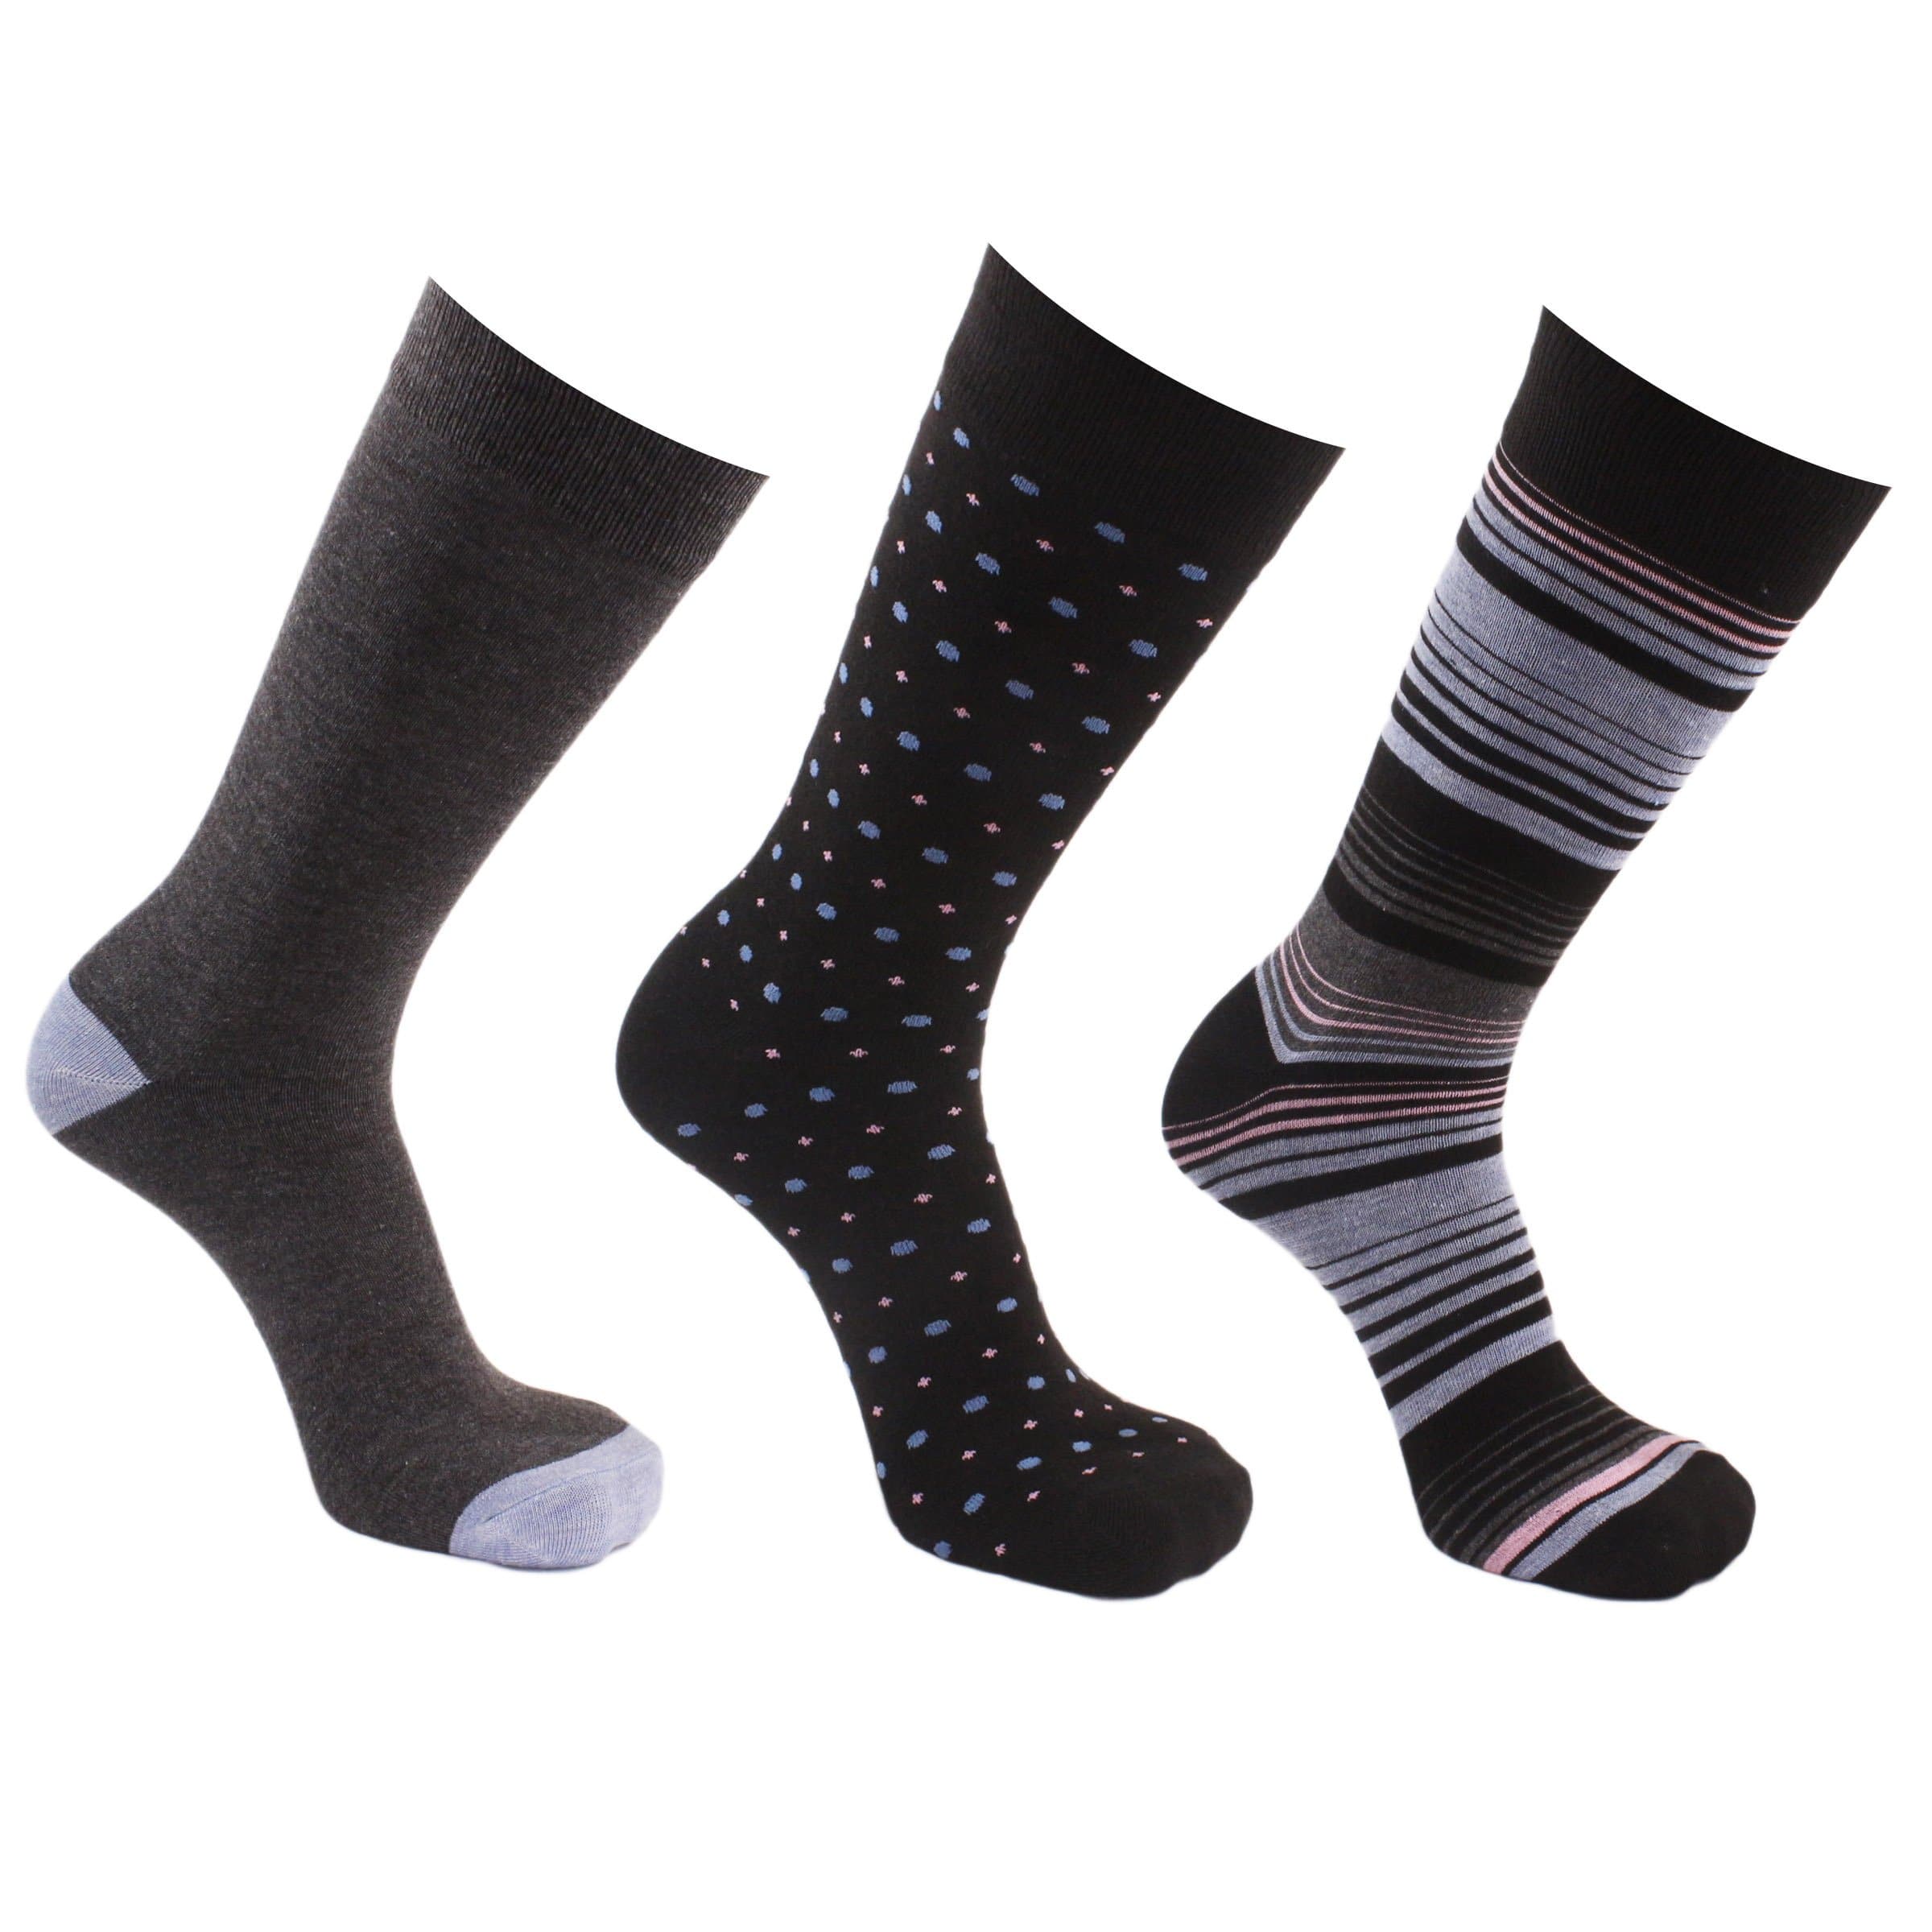 Stripes & Dots 3 Pack Crew Socks - Black - John's Crazy Socks